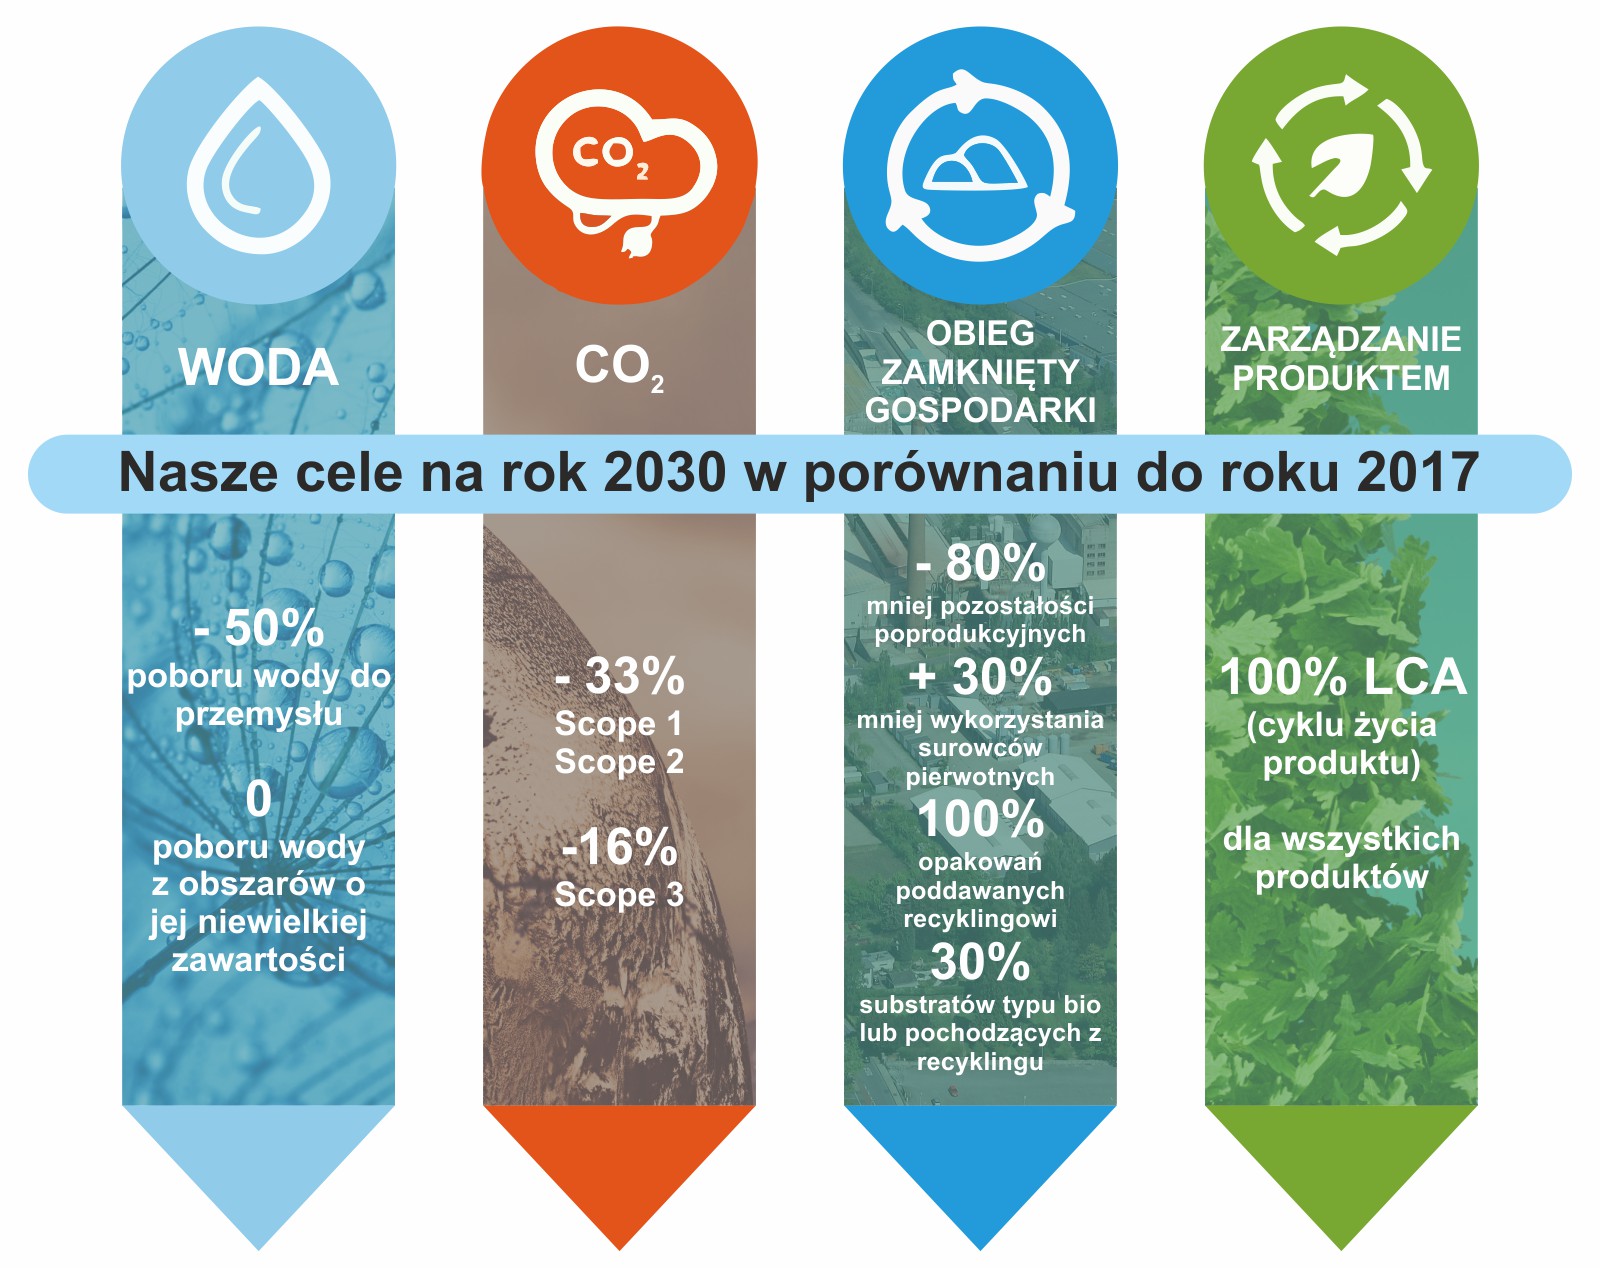 Cele redukcji CO2 do 2030